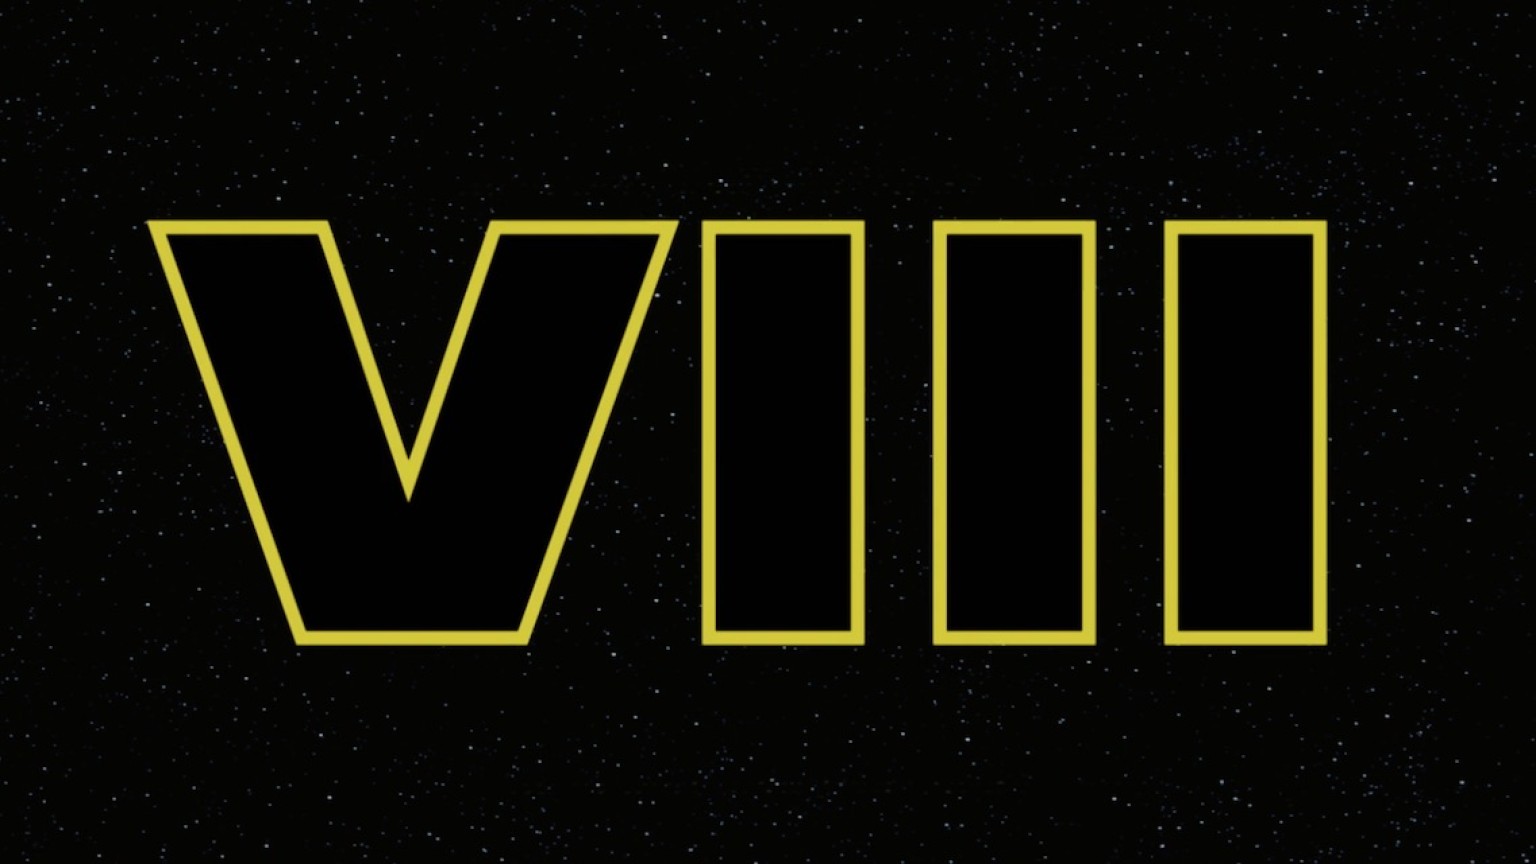 Star Wars Episode VIII Production Started First Teaser